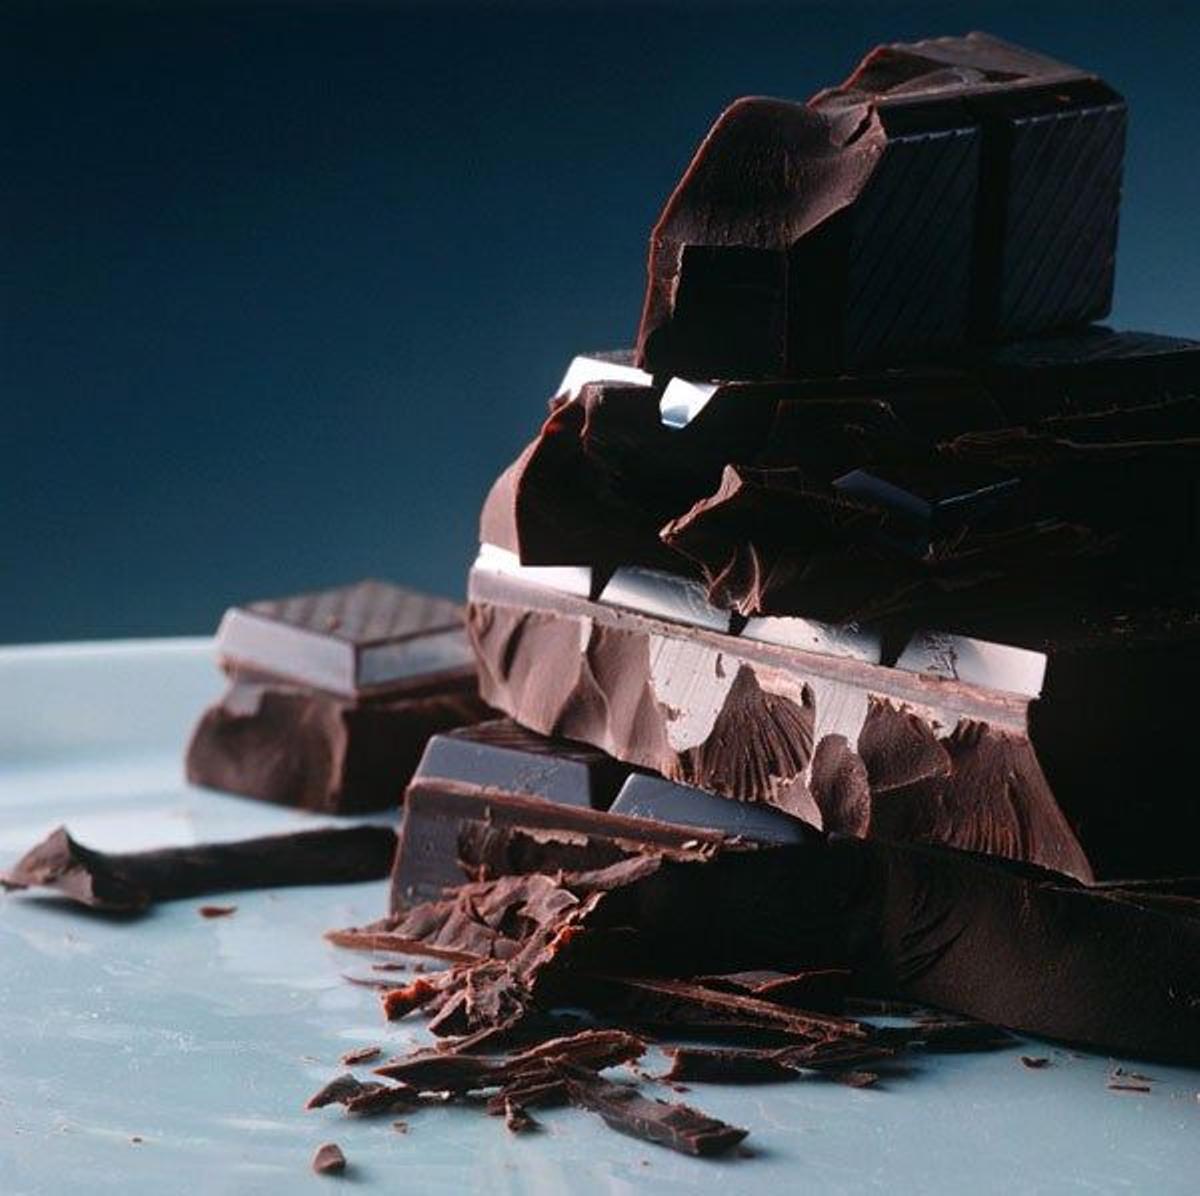 6 motivos por los que debes comer chocolate negro a diario: Refuerza el estado de ánimo